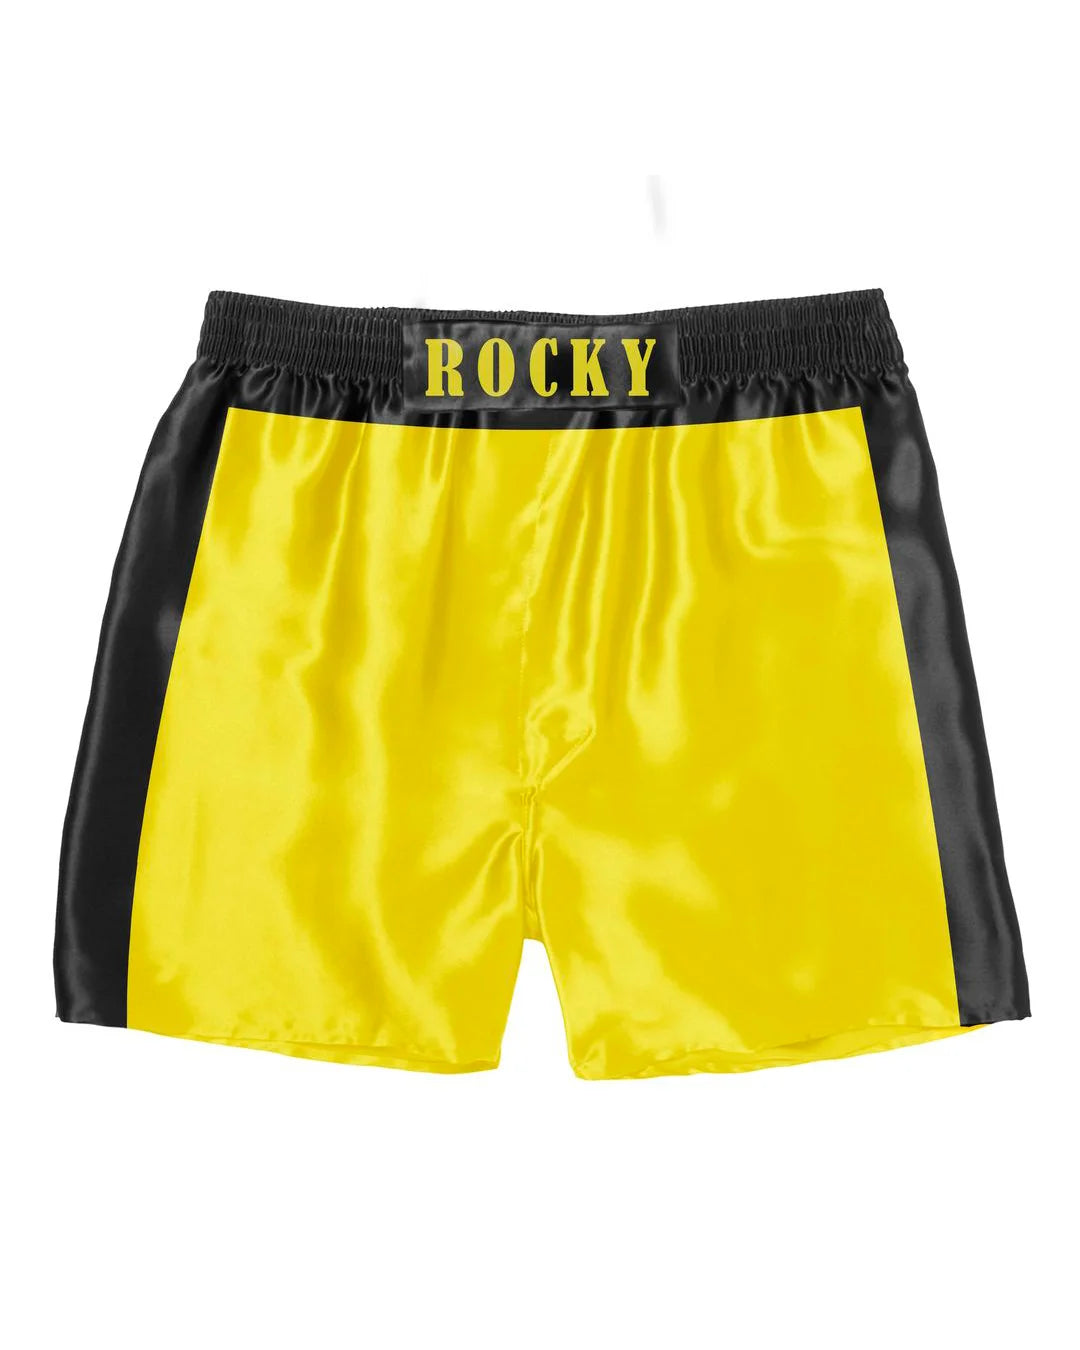 Cueca Samba Canção Boxe - Rocky